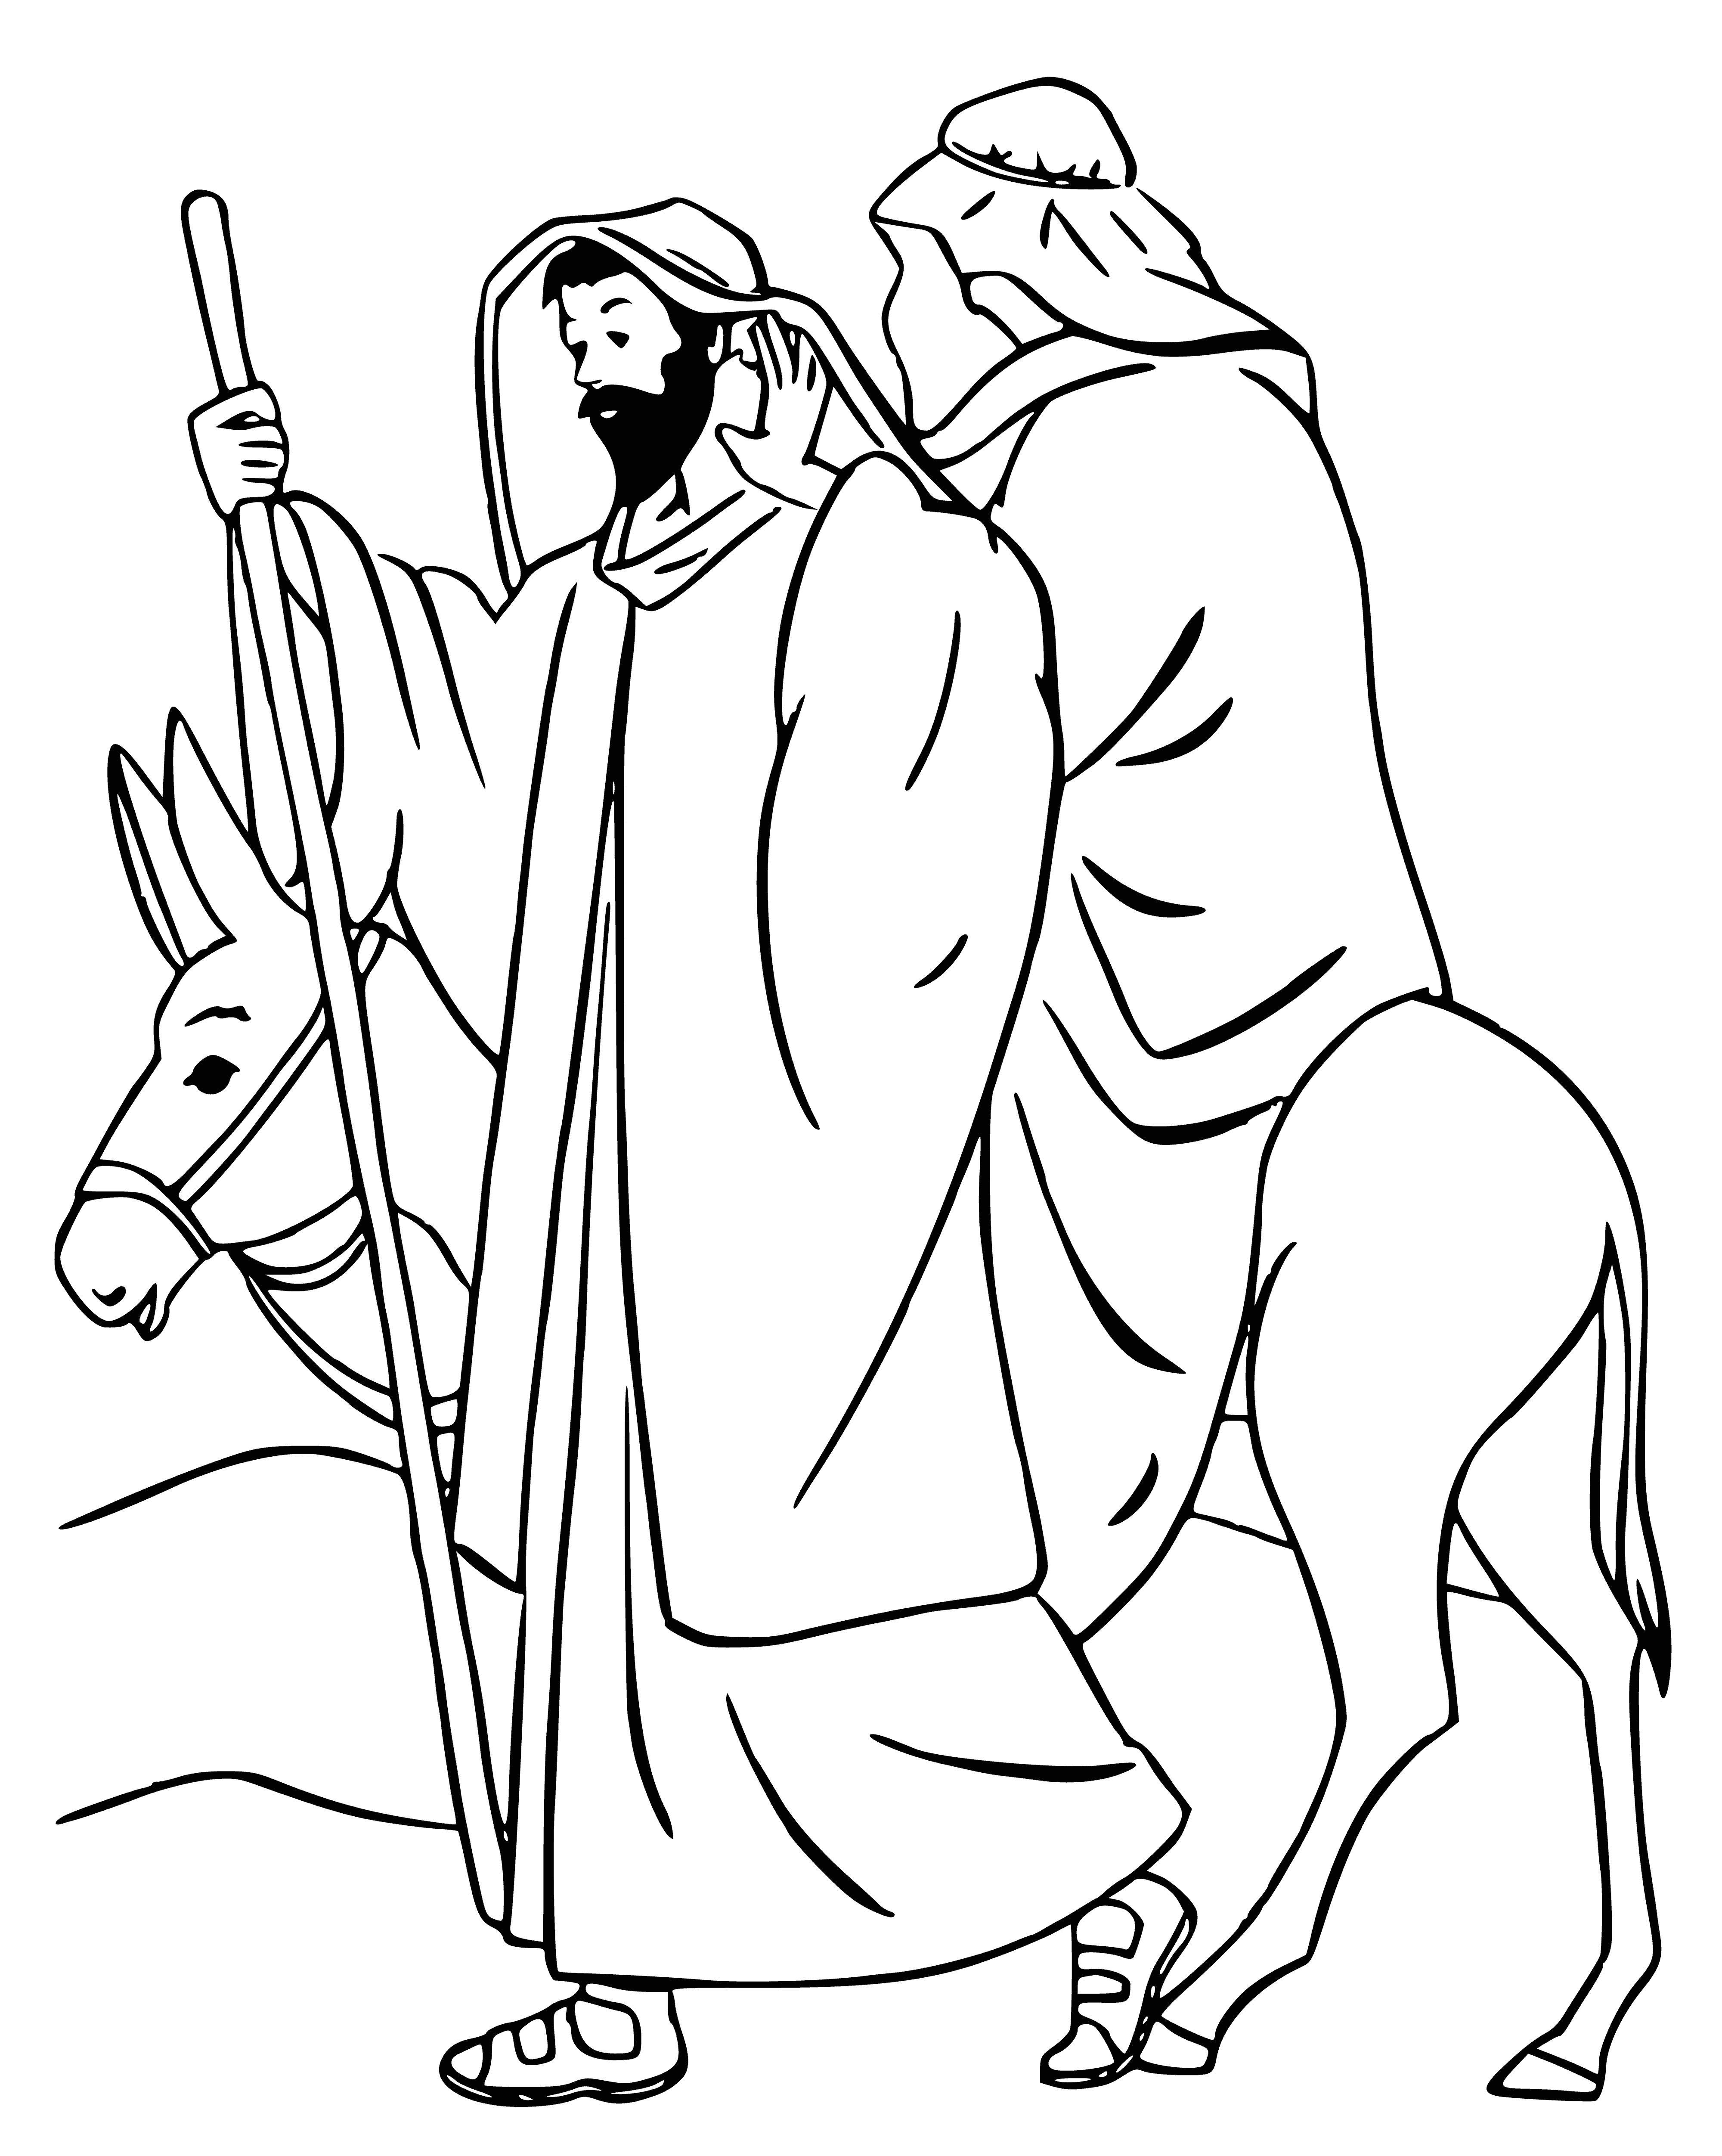 Die Hirten gehen, um Jesus anzubeten Malseite